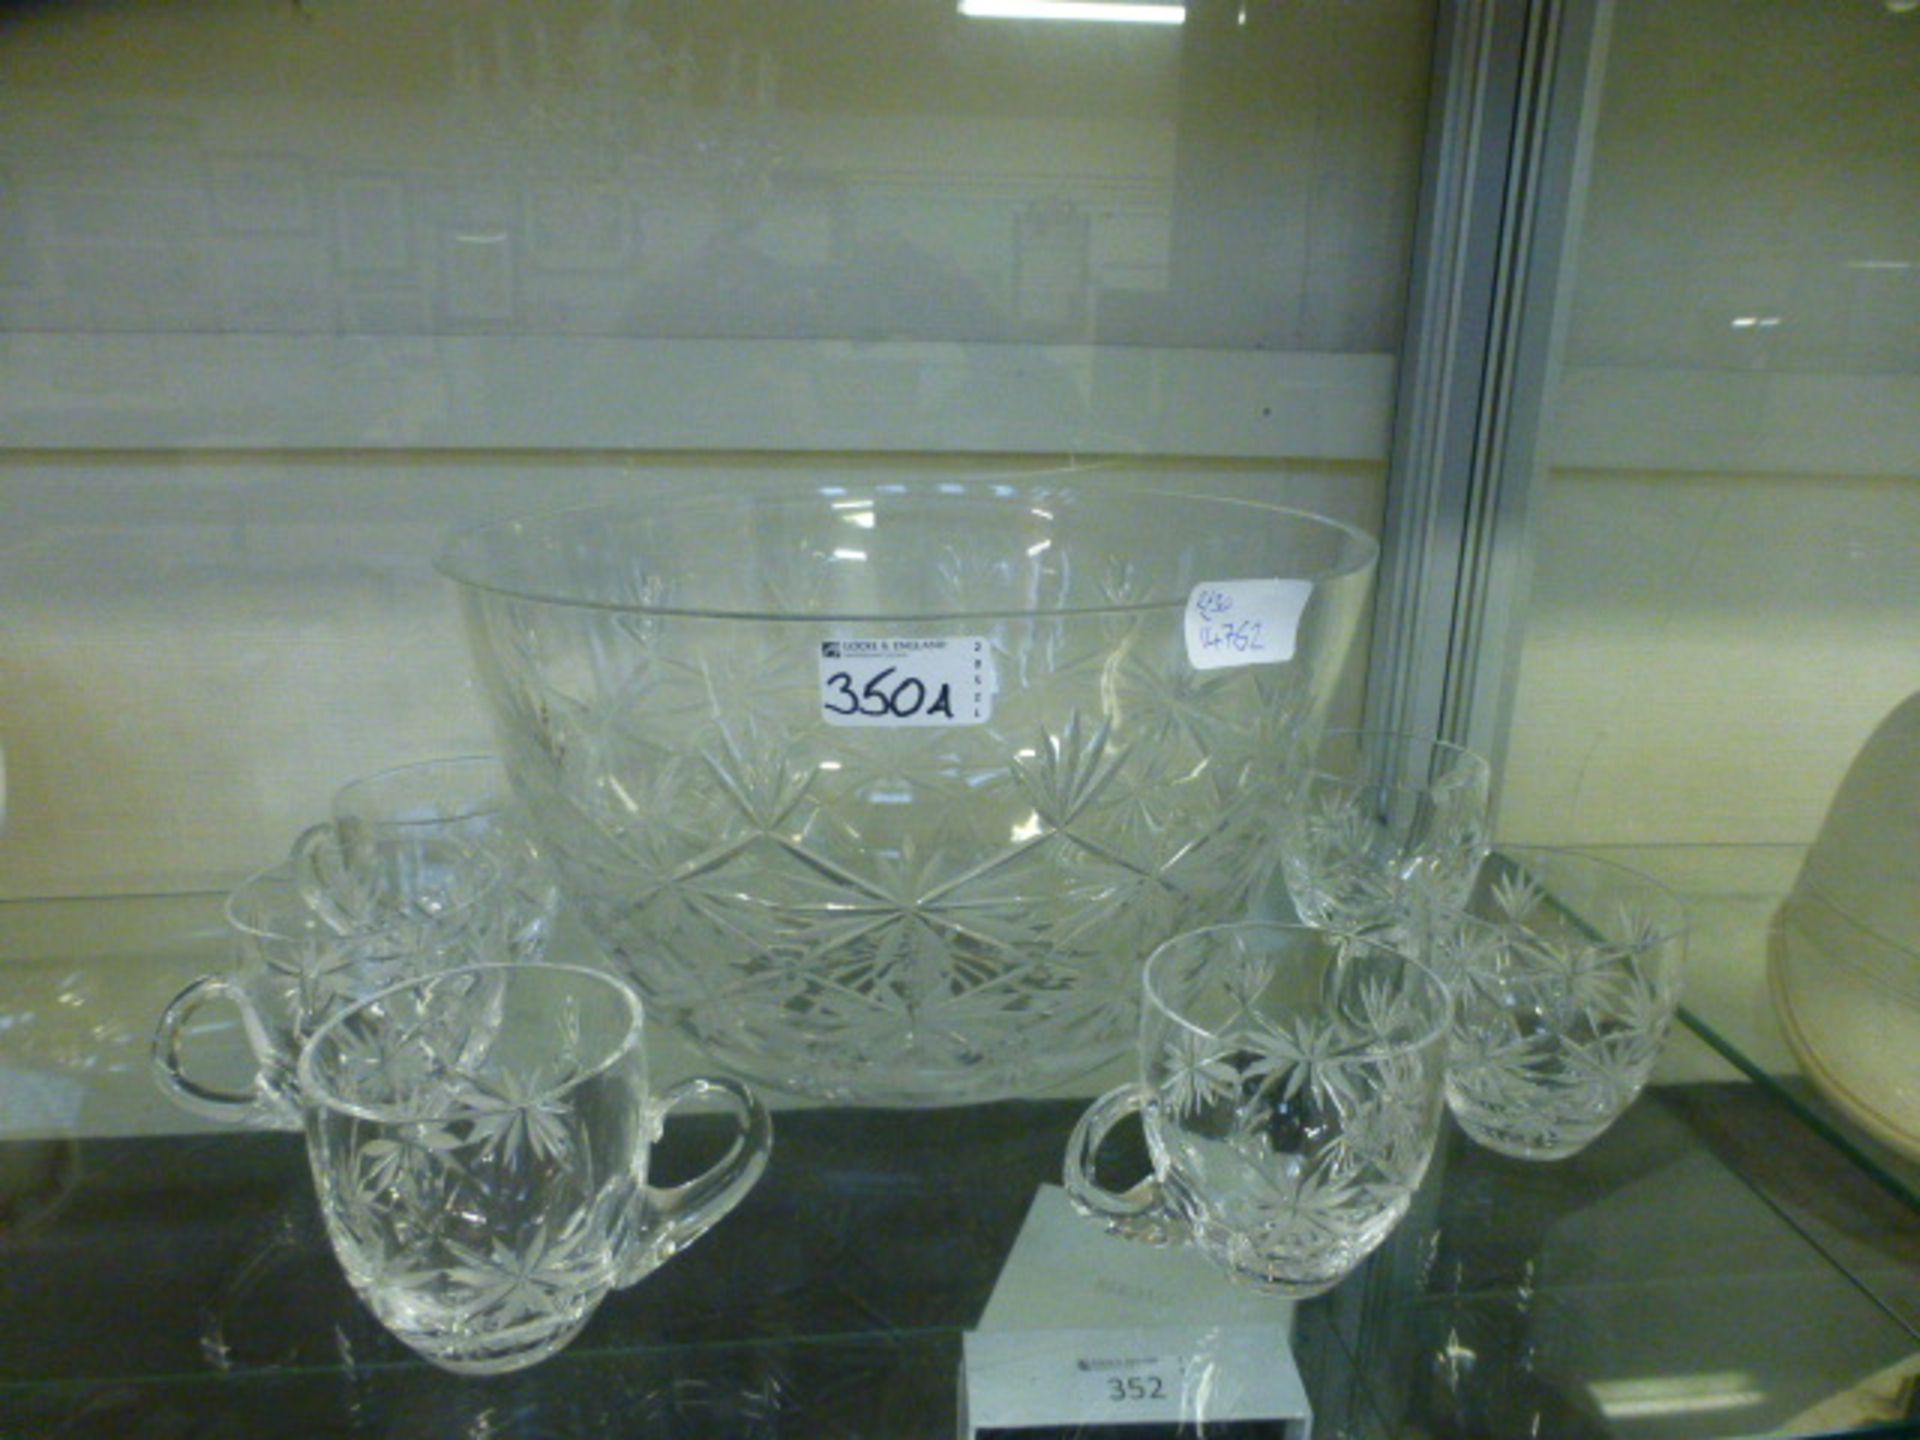 A cut glass punch bowl with matching mugs